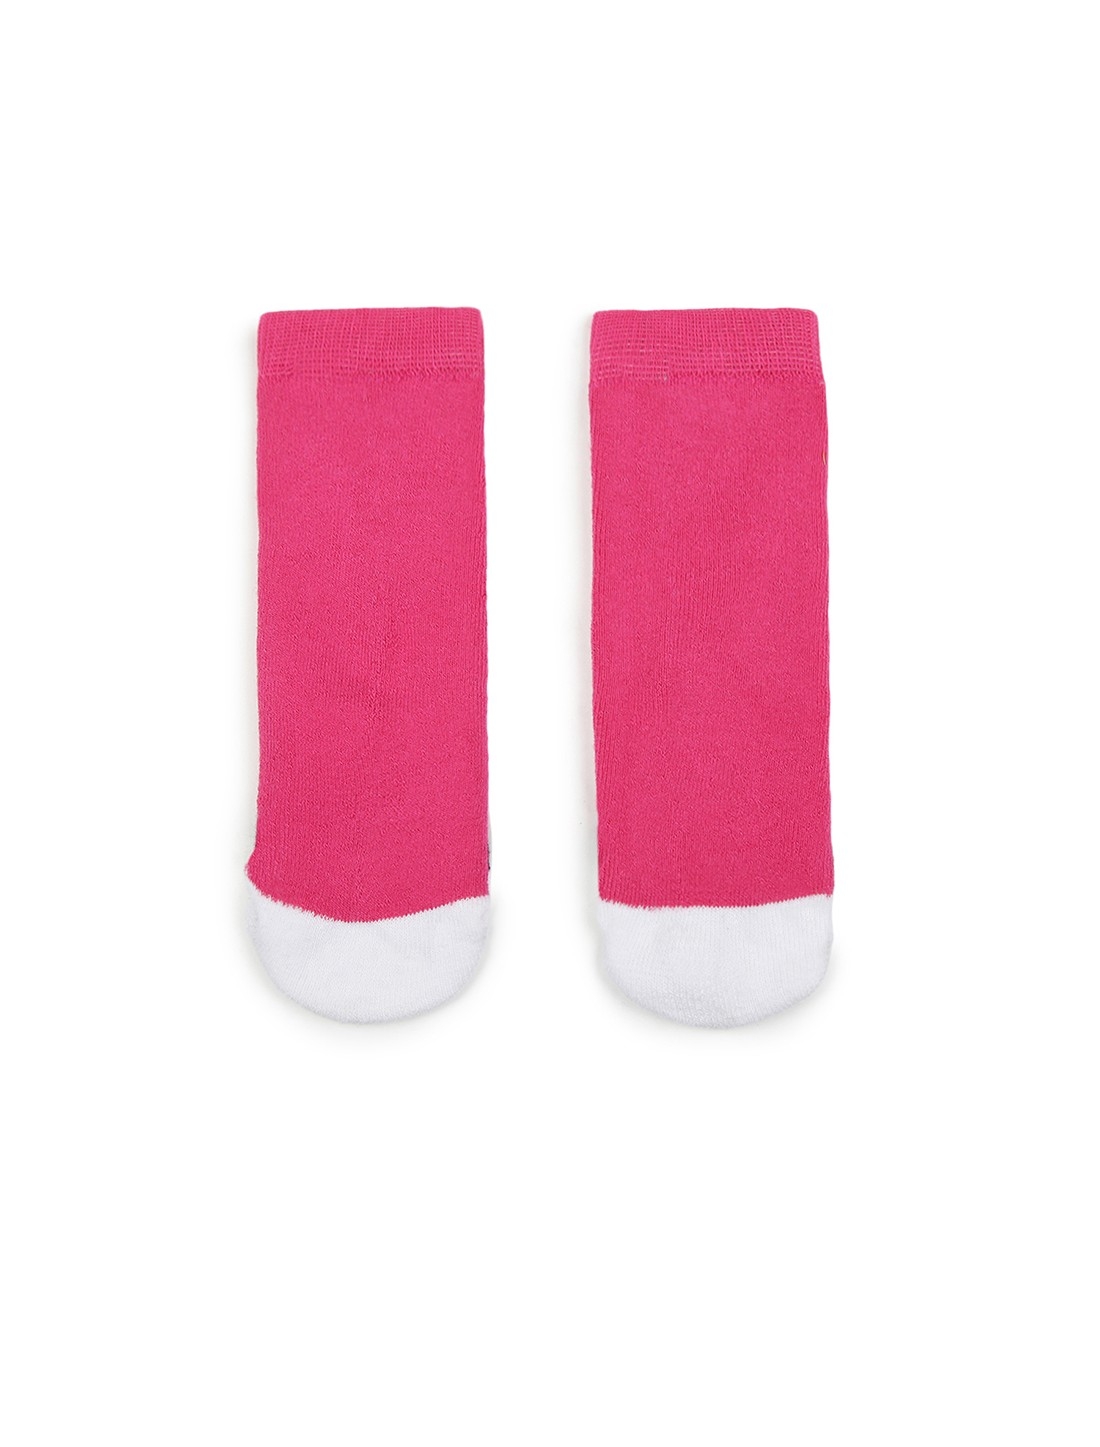 Soxytoes | Soxytoes Penguin Cotton Crew Length Pink Kids Socks-Age (2-4 Years) 1